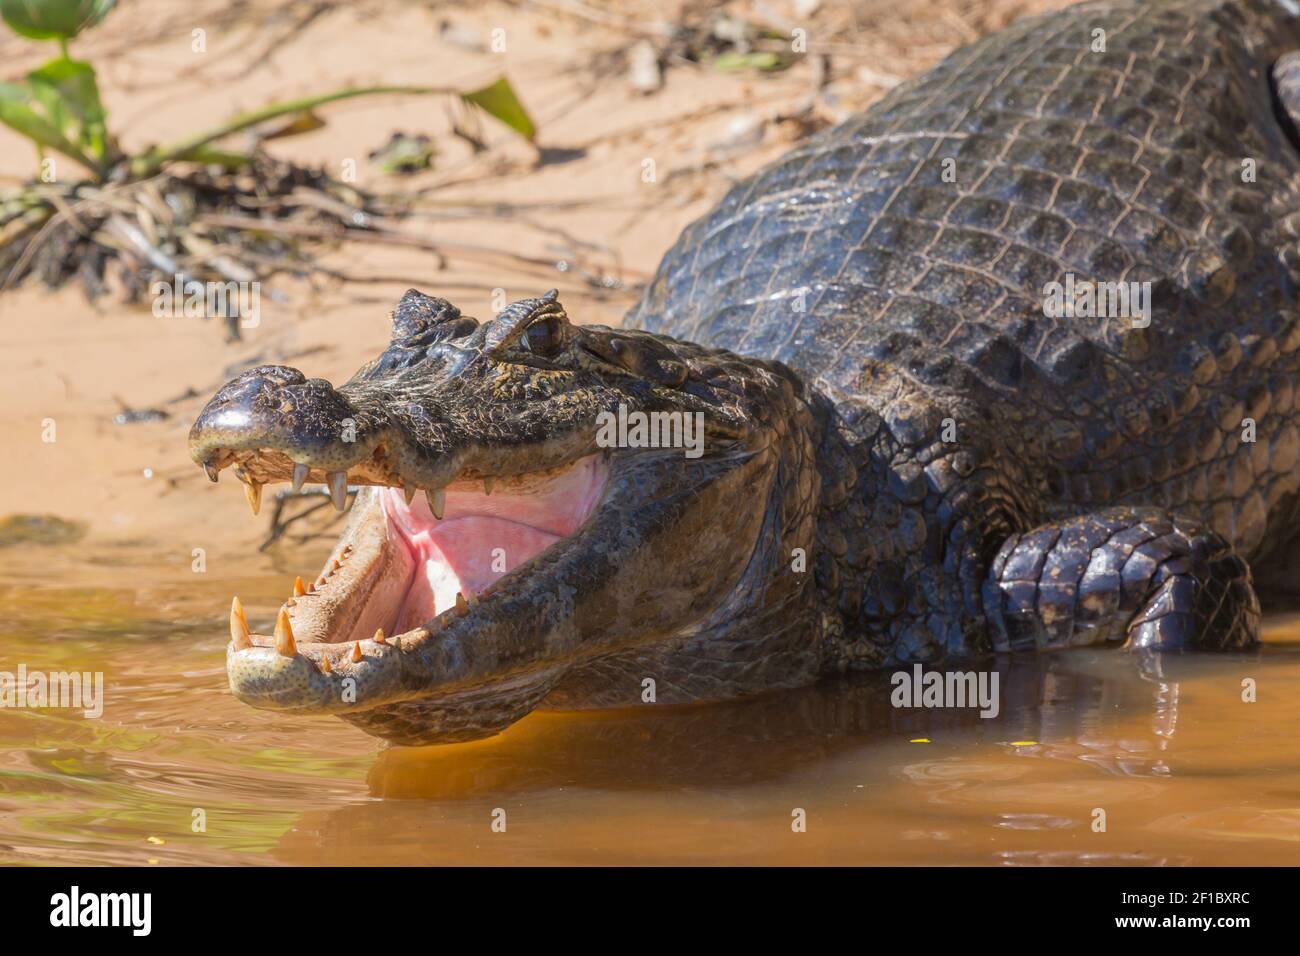 Primo piano della testa con bocca aperta e denti vibranti di un Caiman nel Pantanal settentrionale di Mato Grosso, Brasile Foto Stock